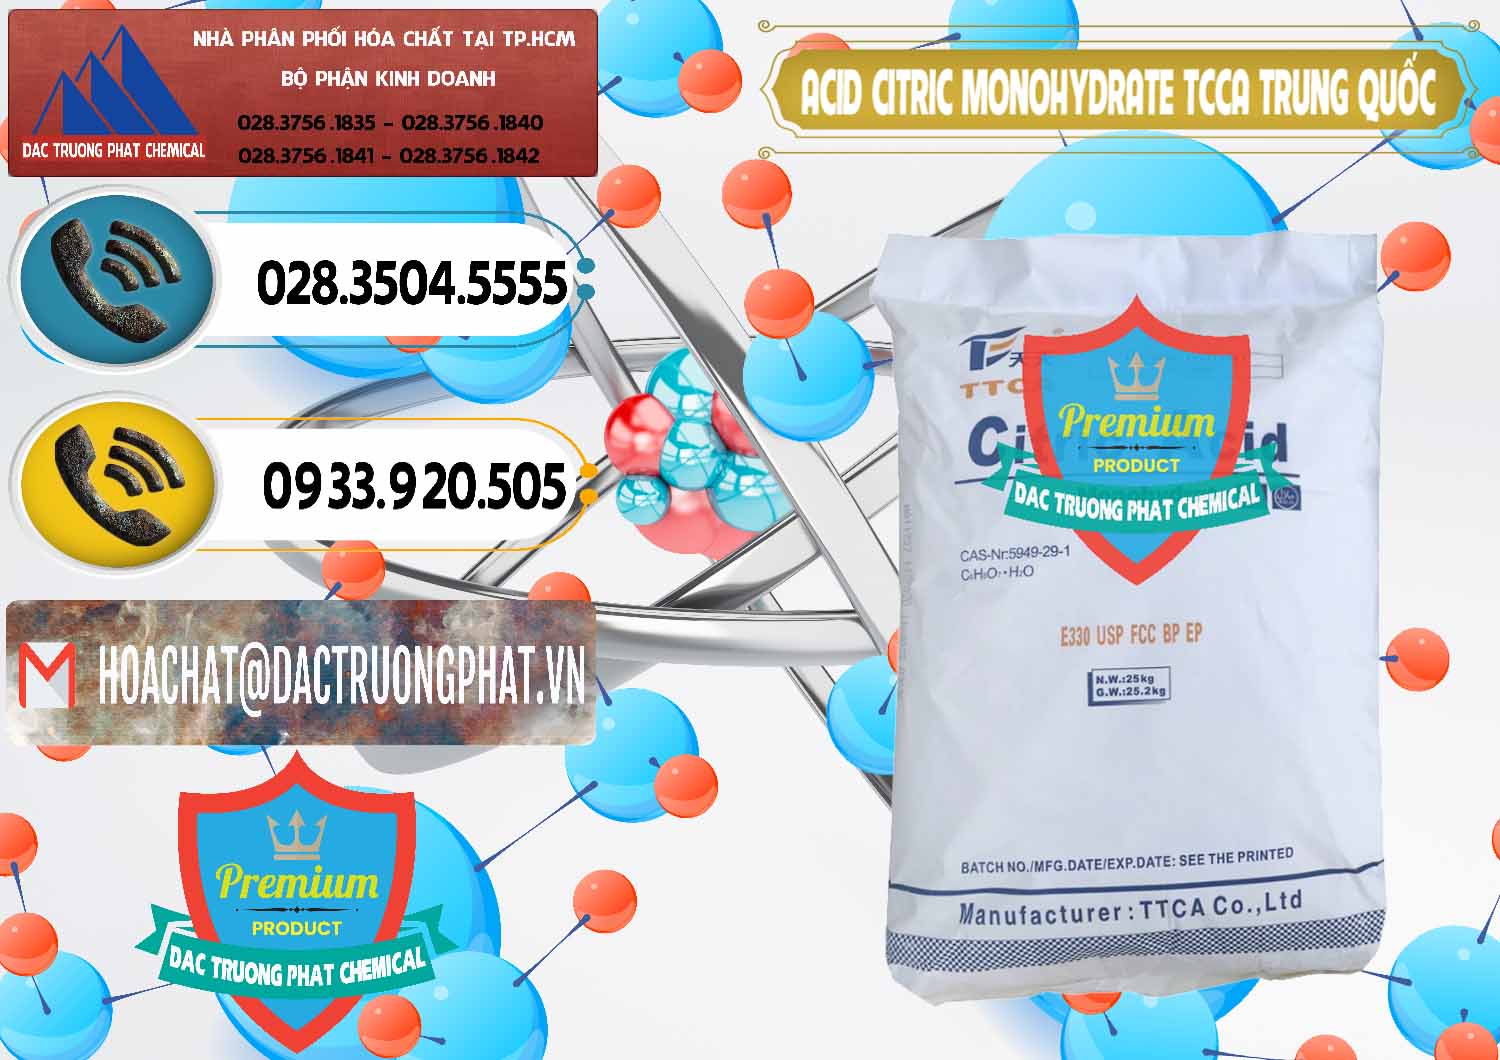 Nhà cung cấp _ bán Acid Citric - Axit Citric Monohydrate TCCA Trung Quốc China - 0441 - Đơn vị chuyên cung cấp & kinh doanh hóa chất tại TP.HCM - hoachatdetnhuom.vn